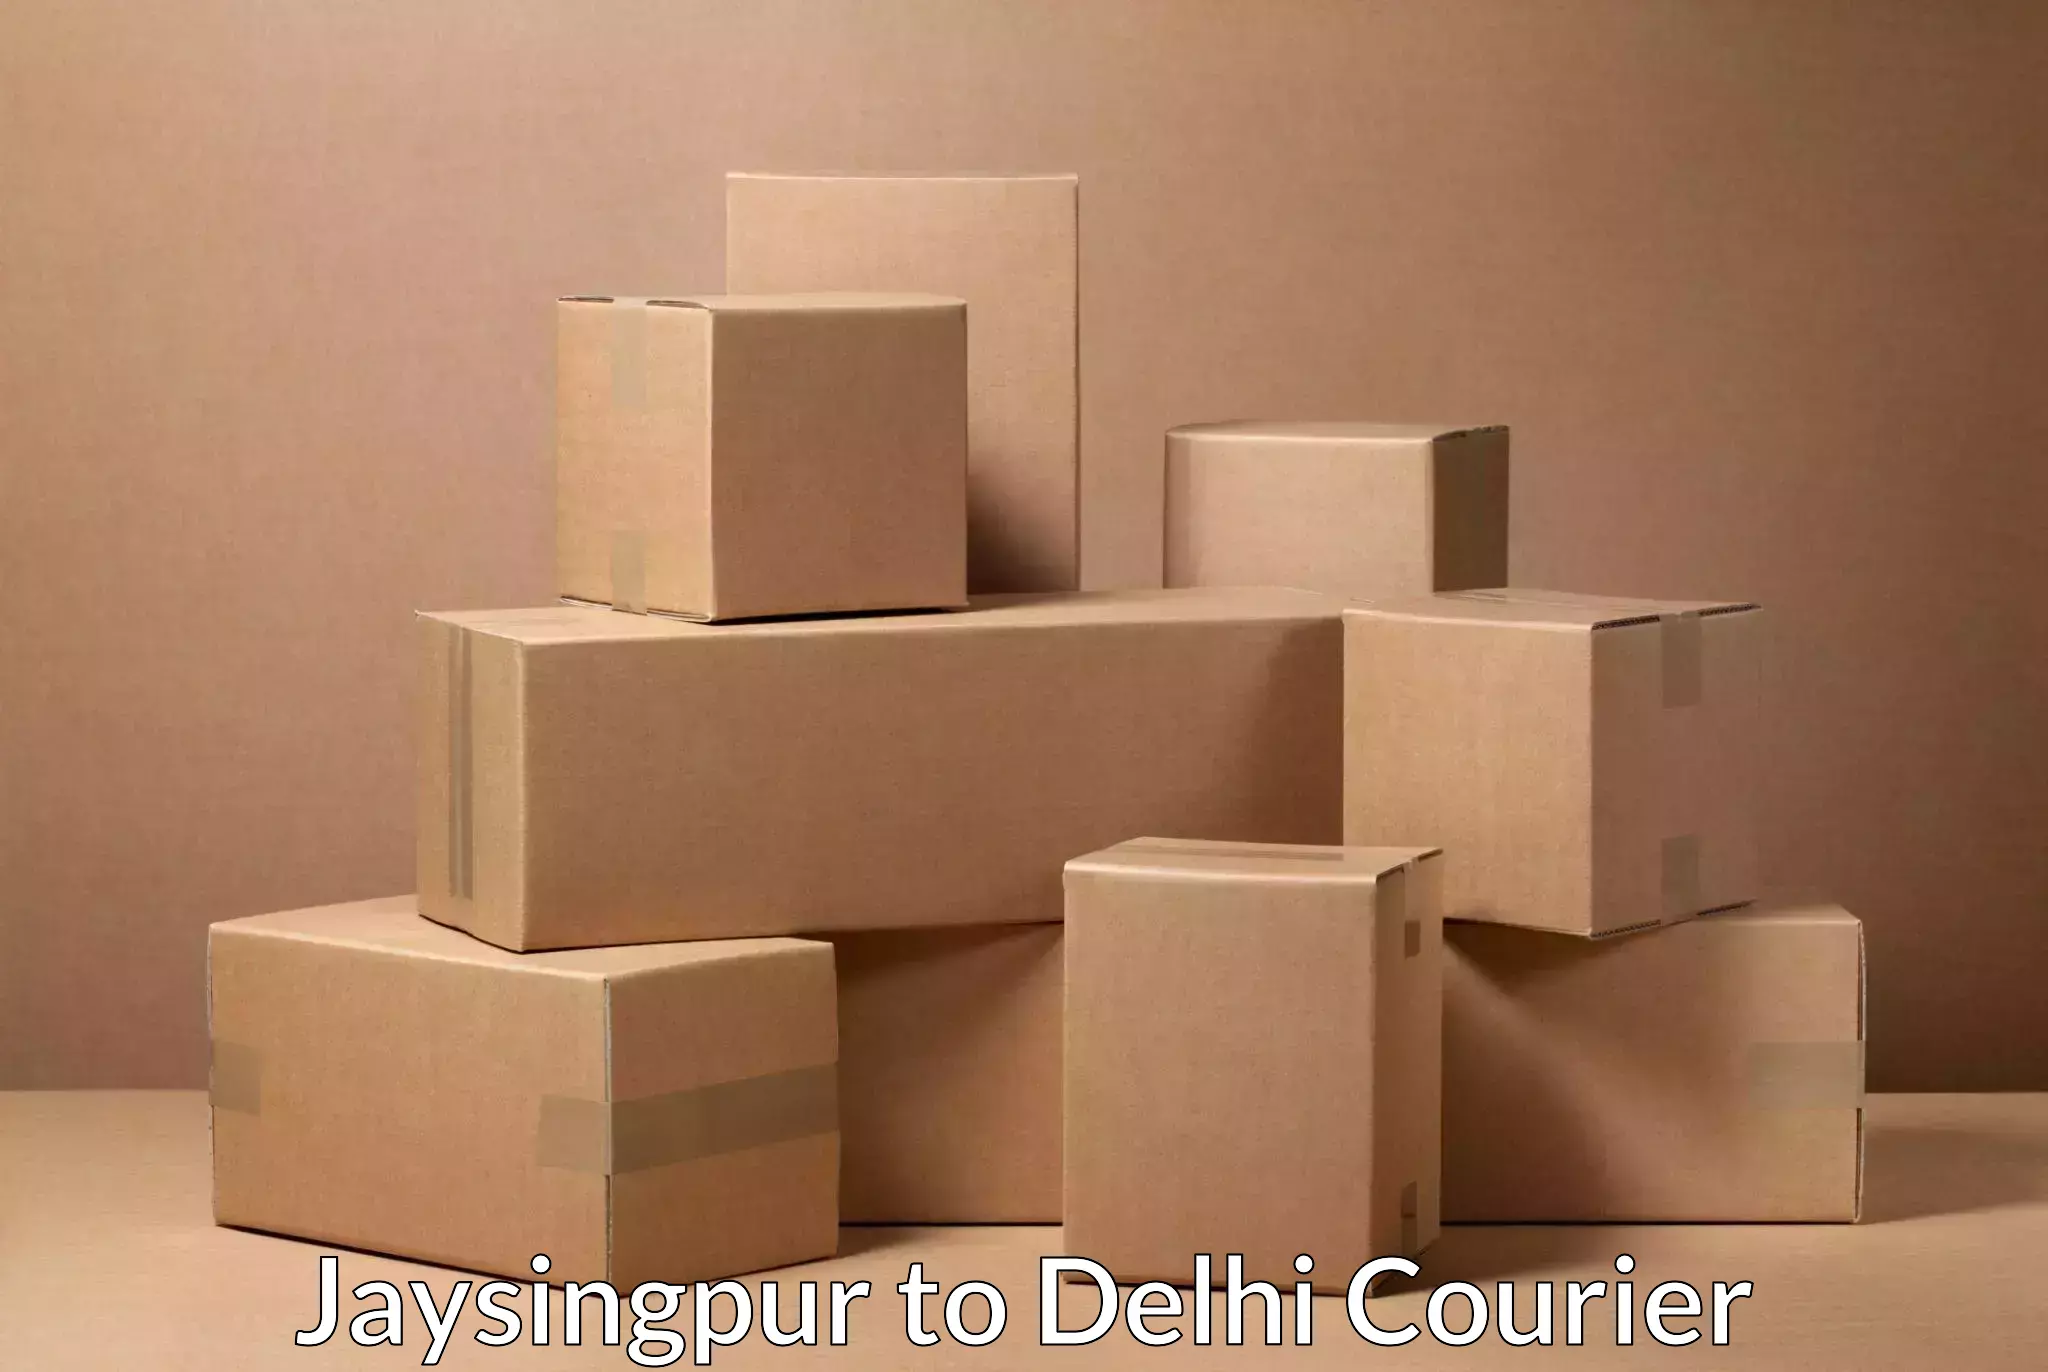 Door-to-door shipping Jaysingpur to Jamia Hamdard New Delhi